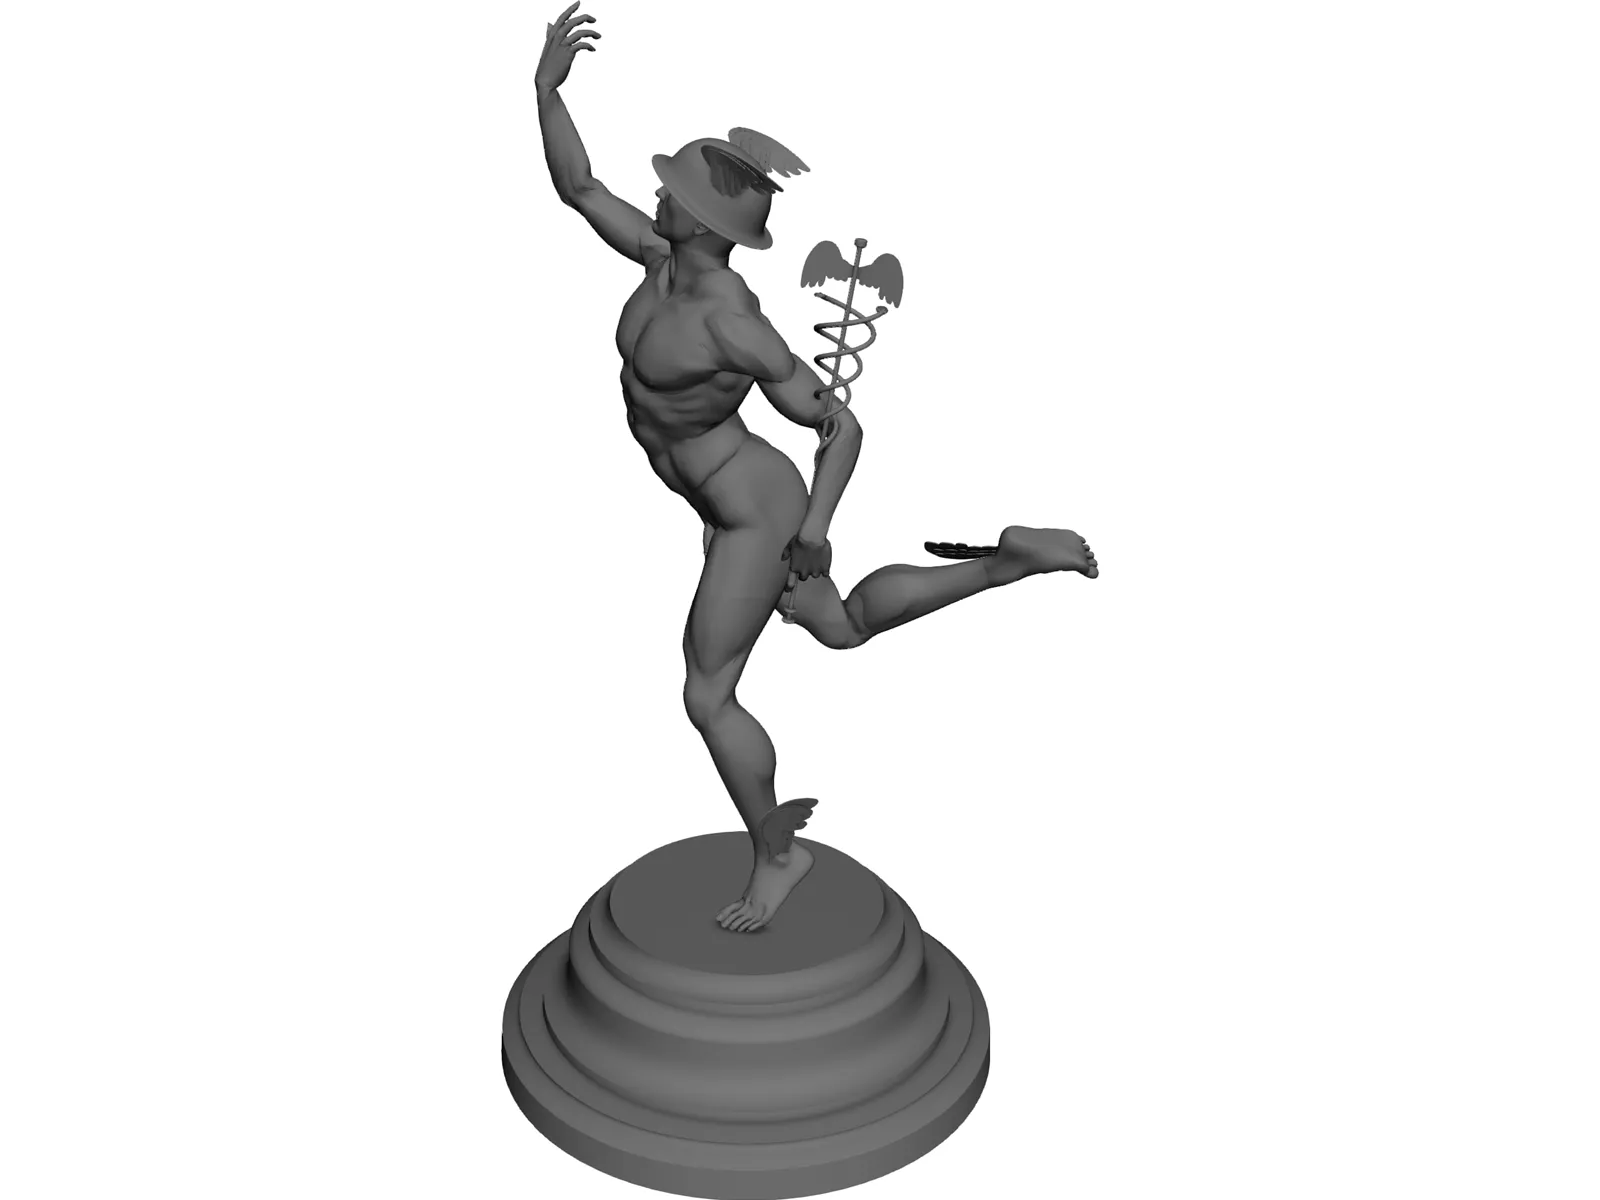 Hermes statuette 3D Model